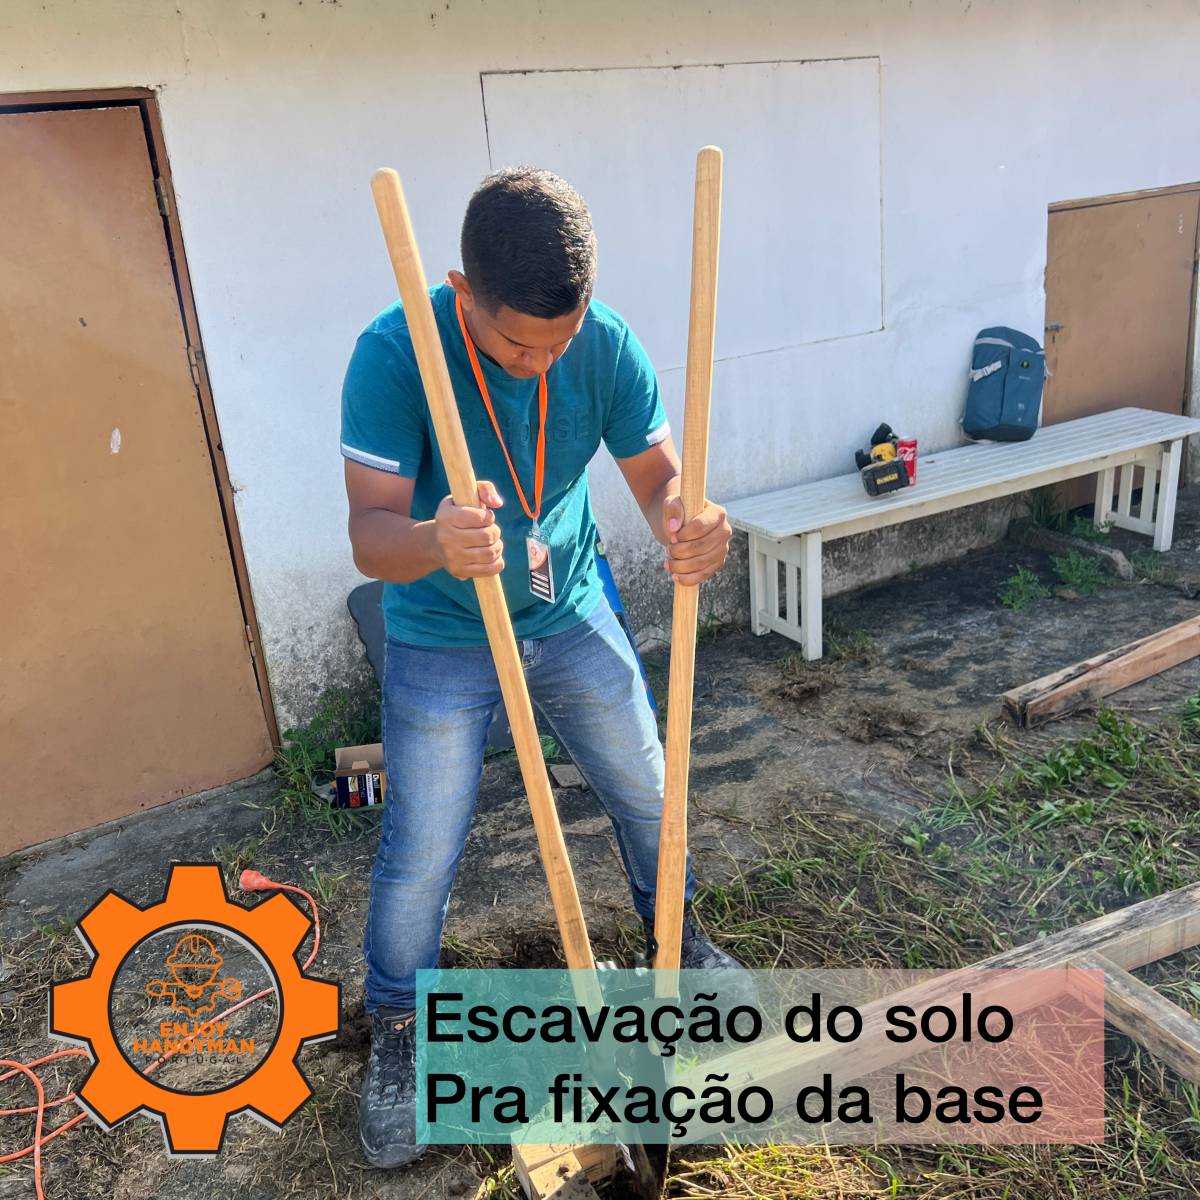 Enjoy Handyman Portugal (JorgeLuiz&EnedinnaSantos) - Vila Nova de Gaia - Demolição de Construções